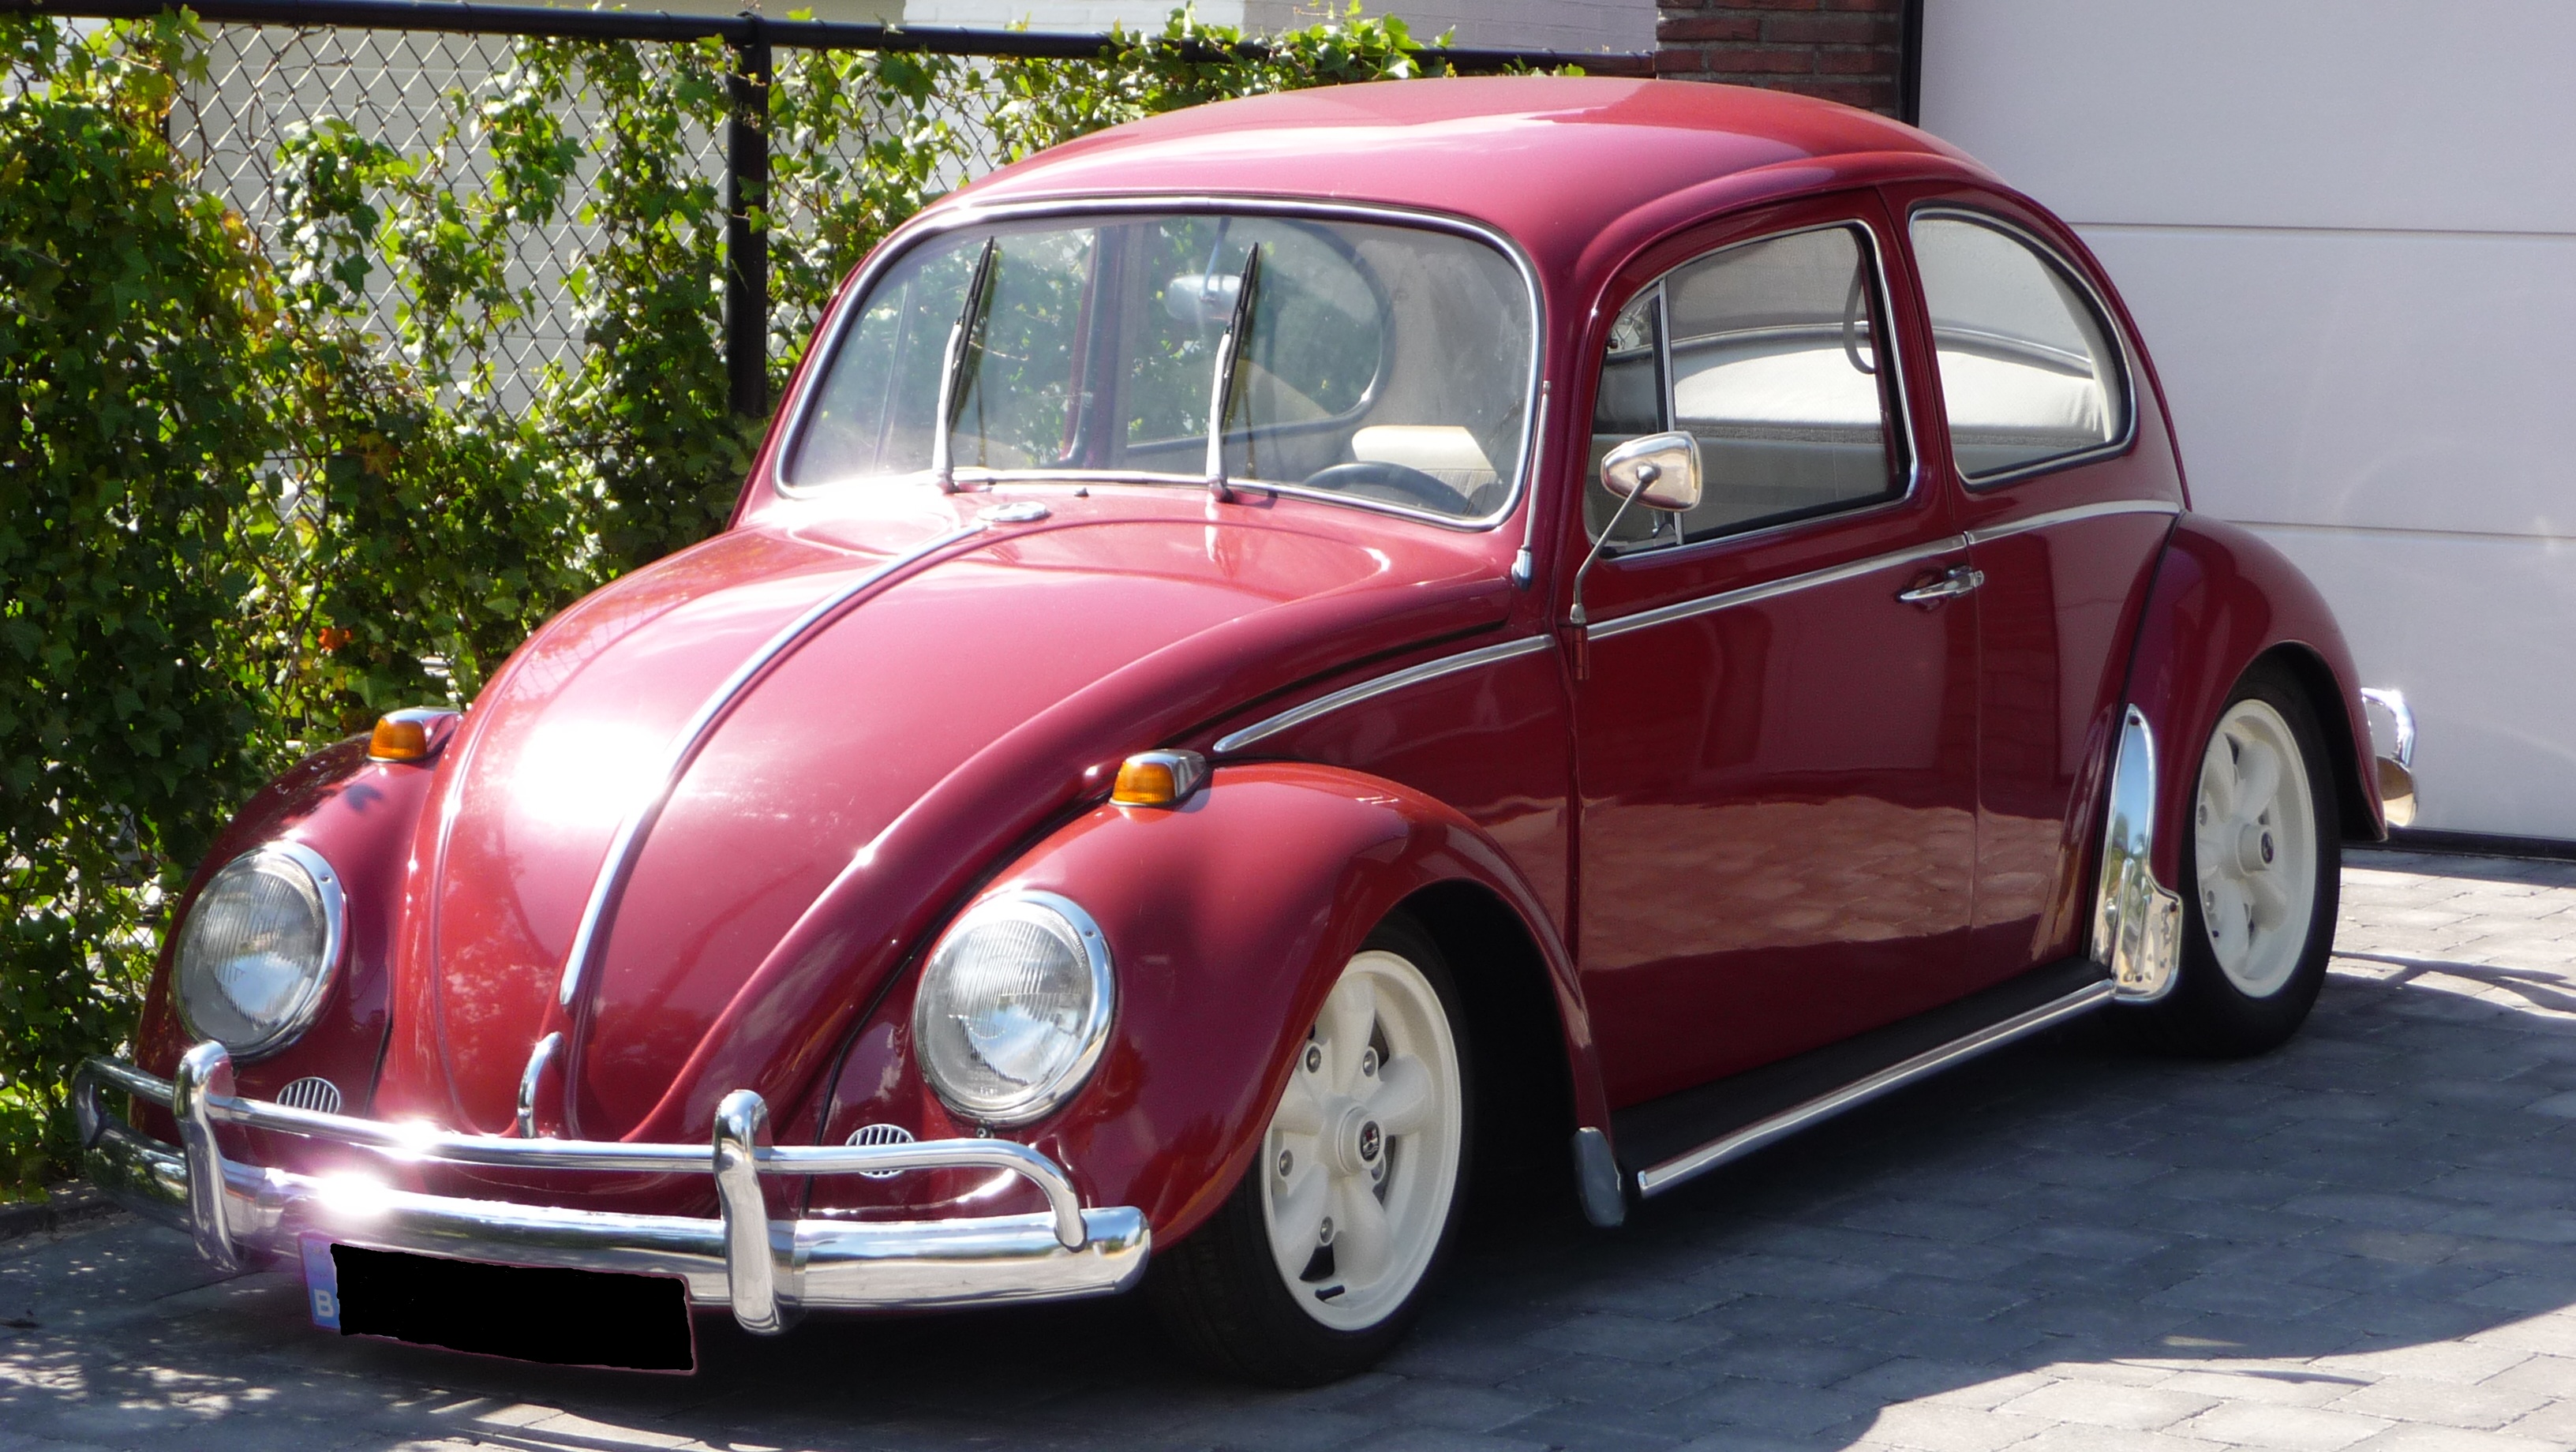 cars, beetles, Volkswagen - desktop wallpaper